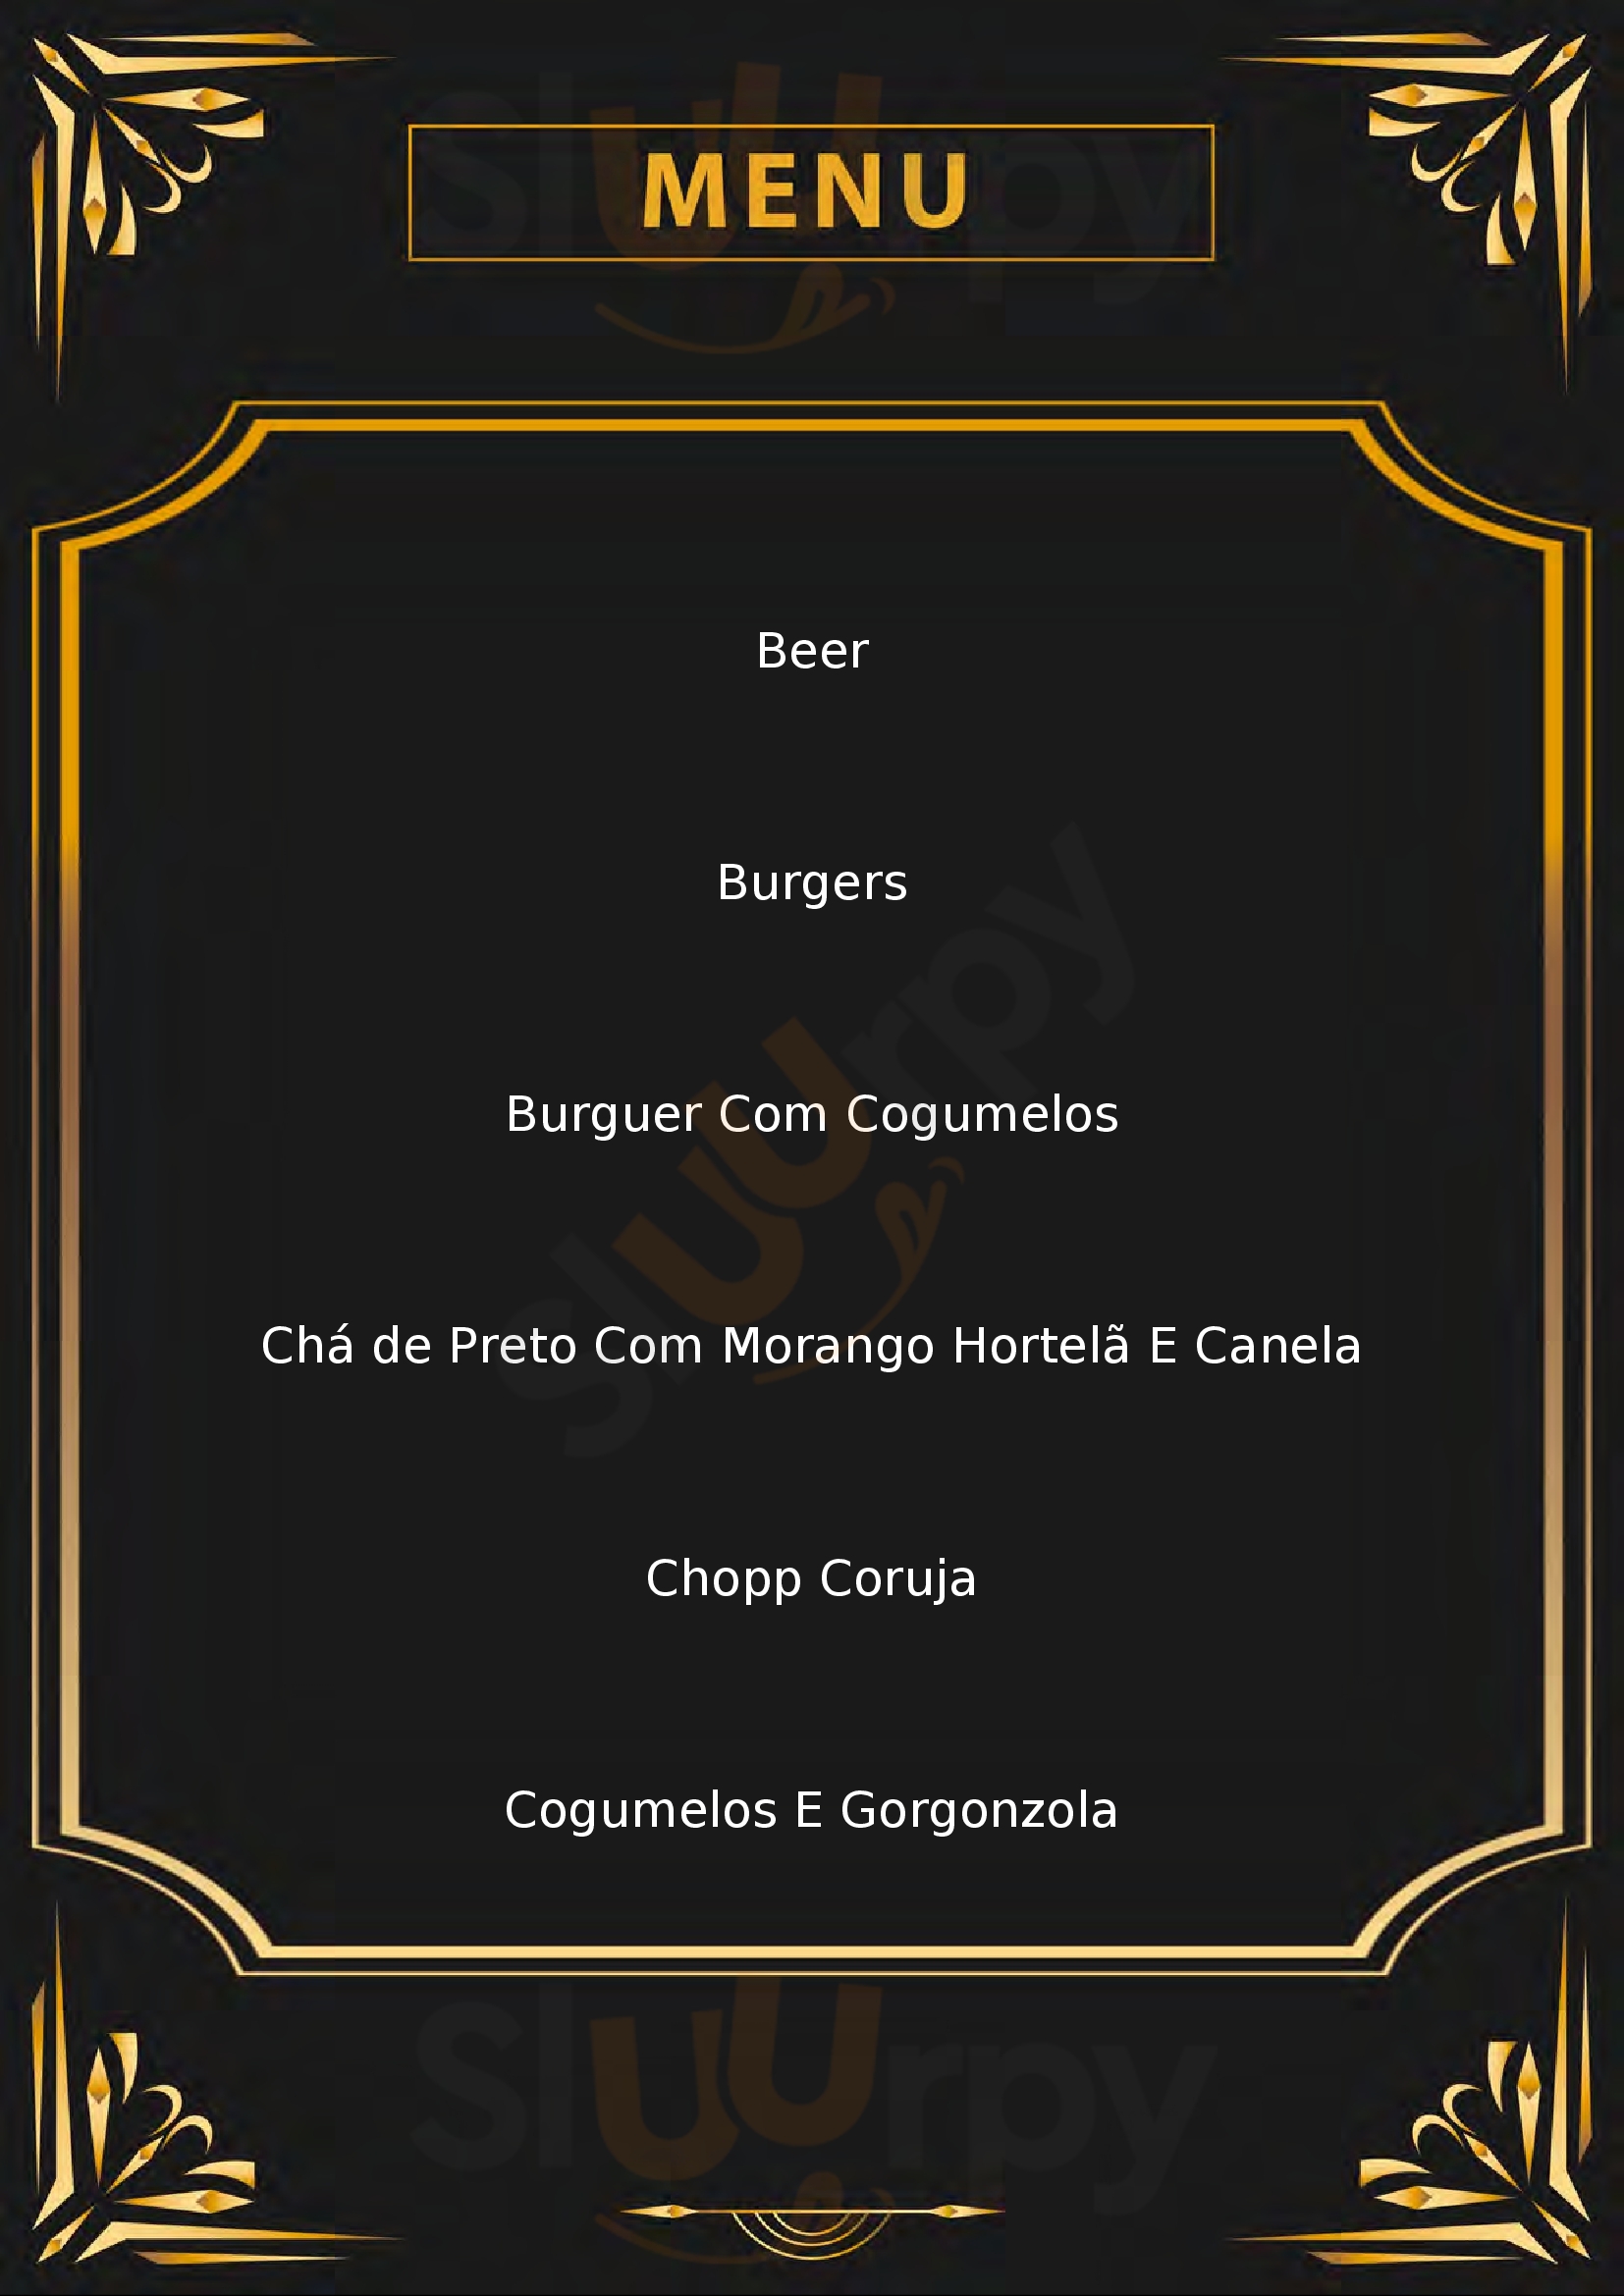 Le Grand Burger - Hamburgueria Porto Alegre Menu - 1